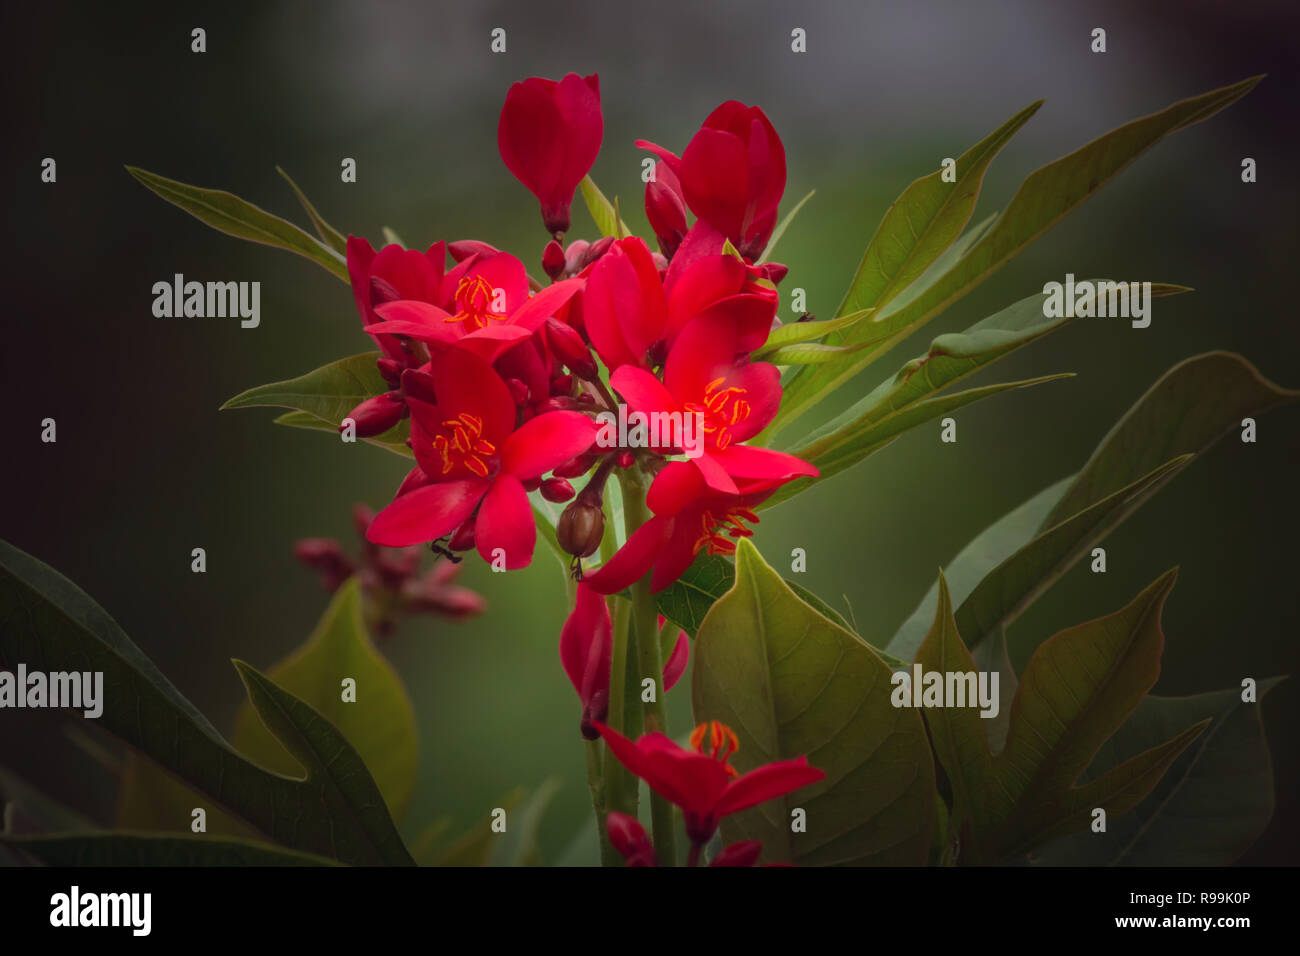 close up of Jatropha pandurifolia flower on black background Stock Photo